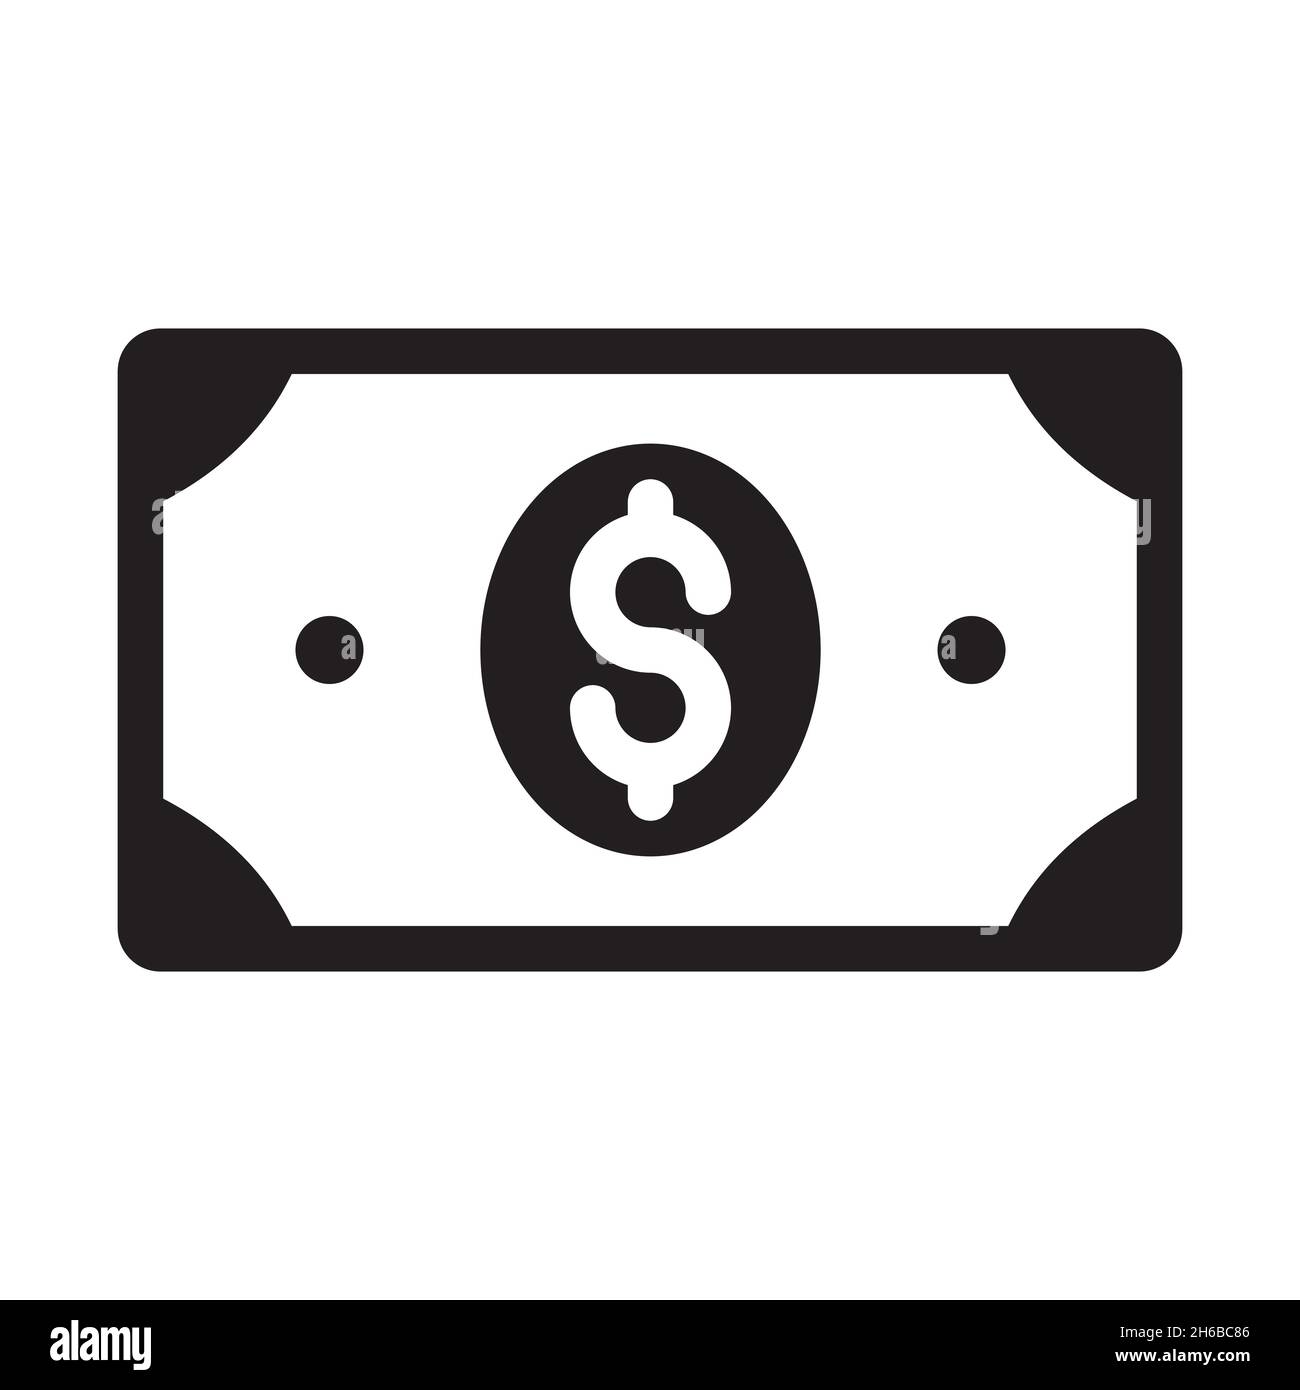 Banconota con simbolo del dollaro. Icona semplice isolata su sfondo bianco. Illustrazione Vettoriale